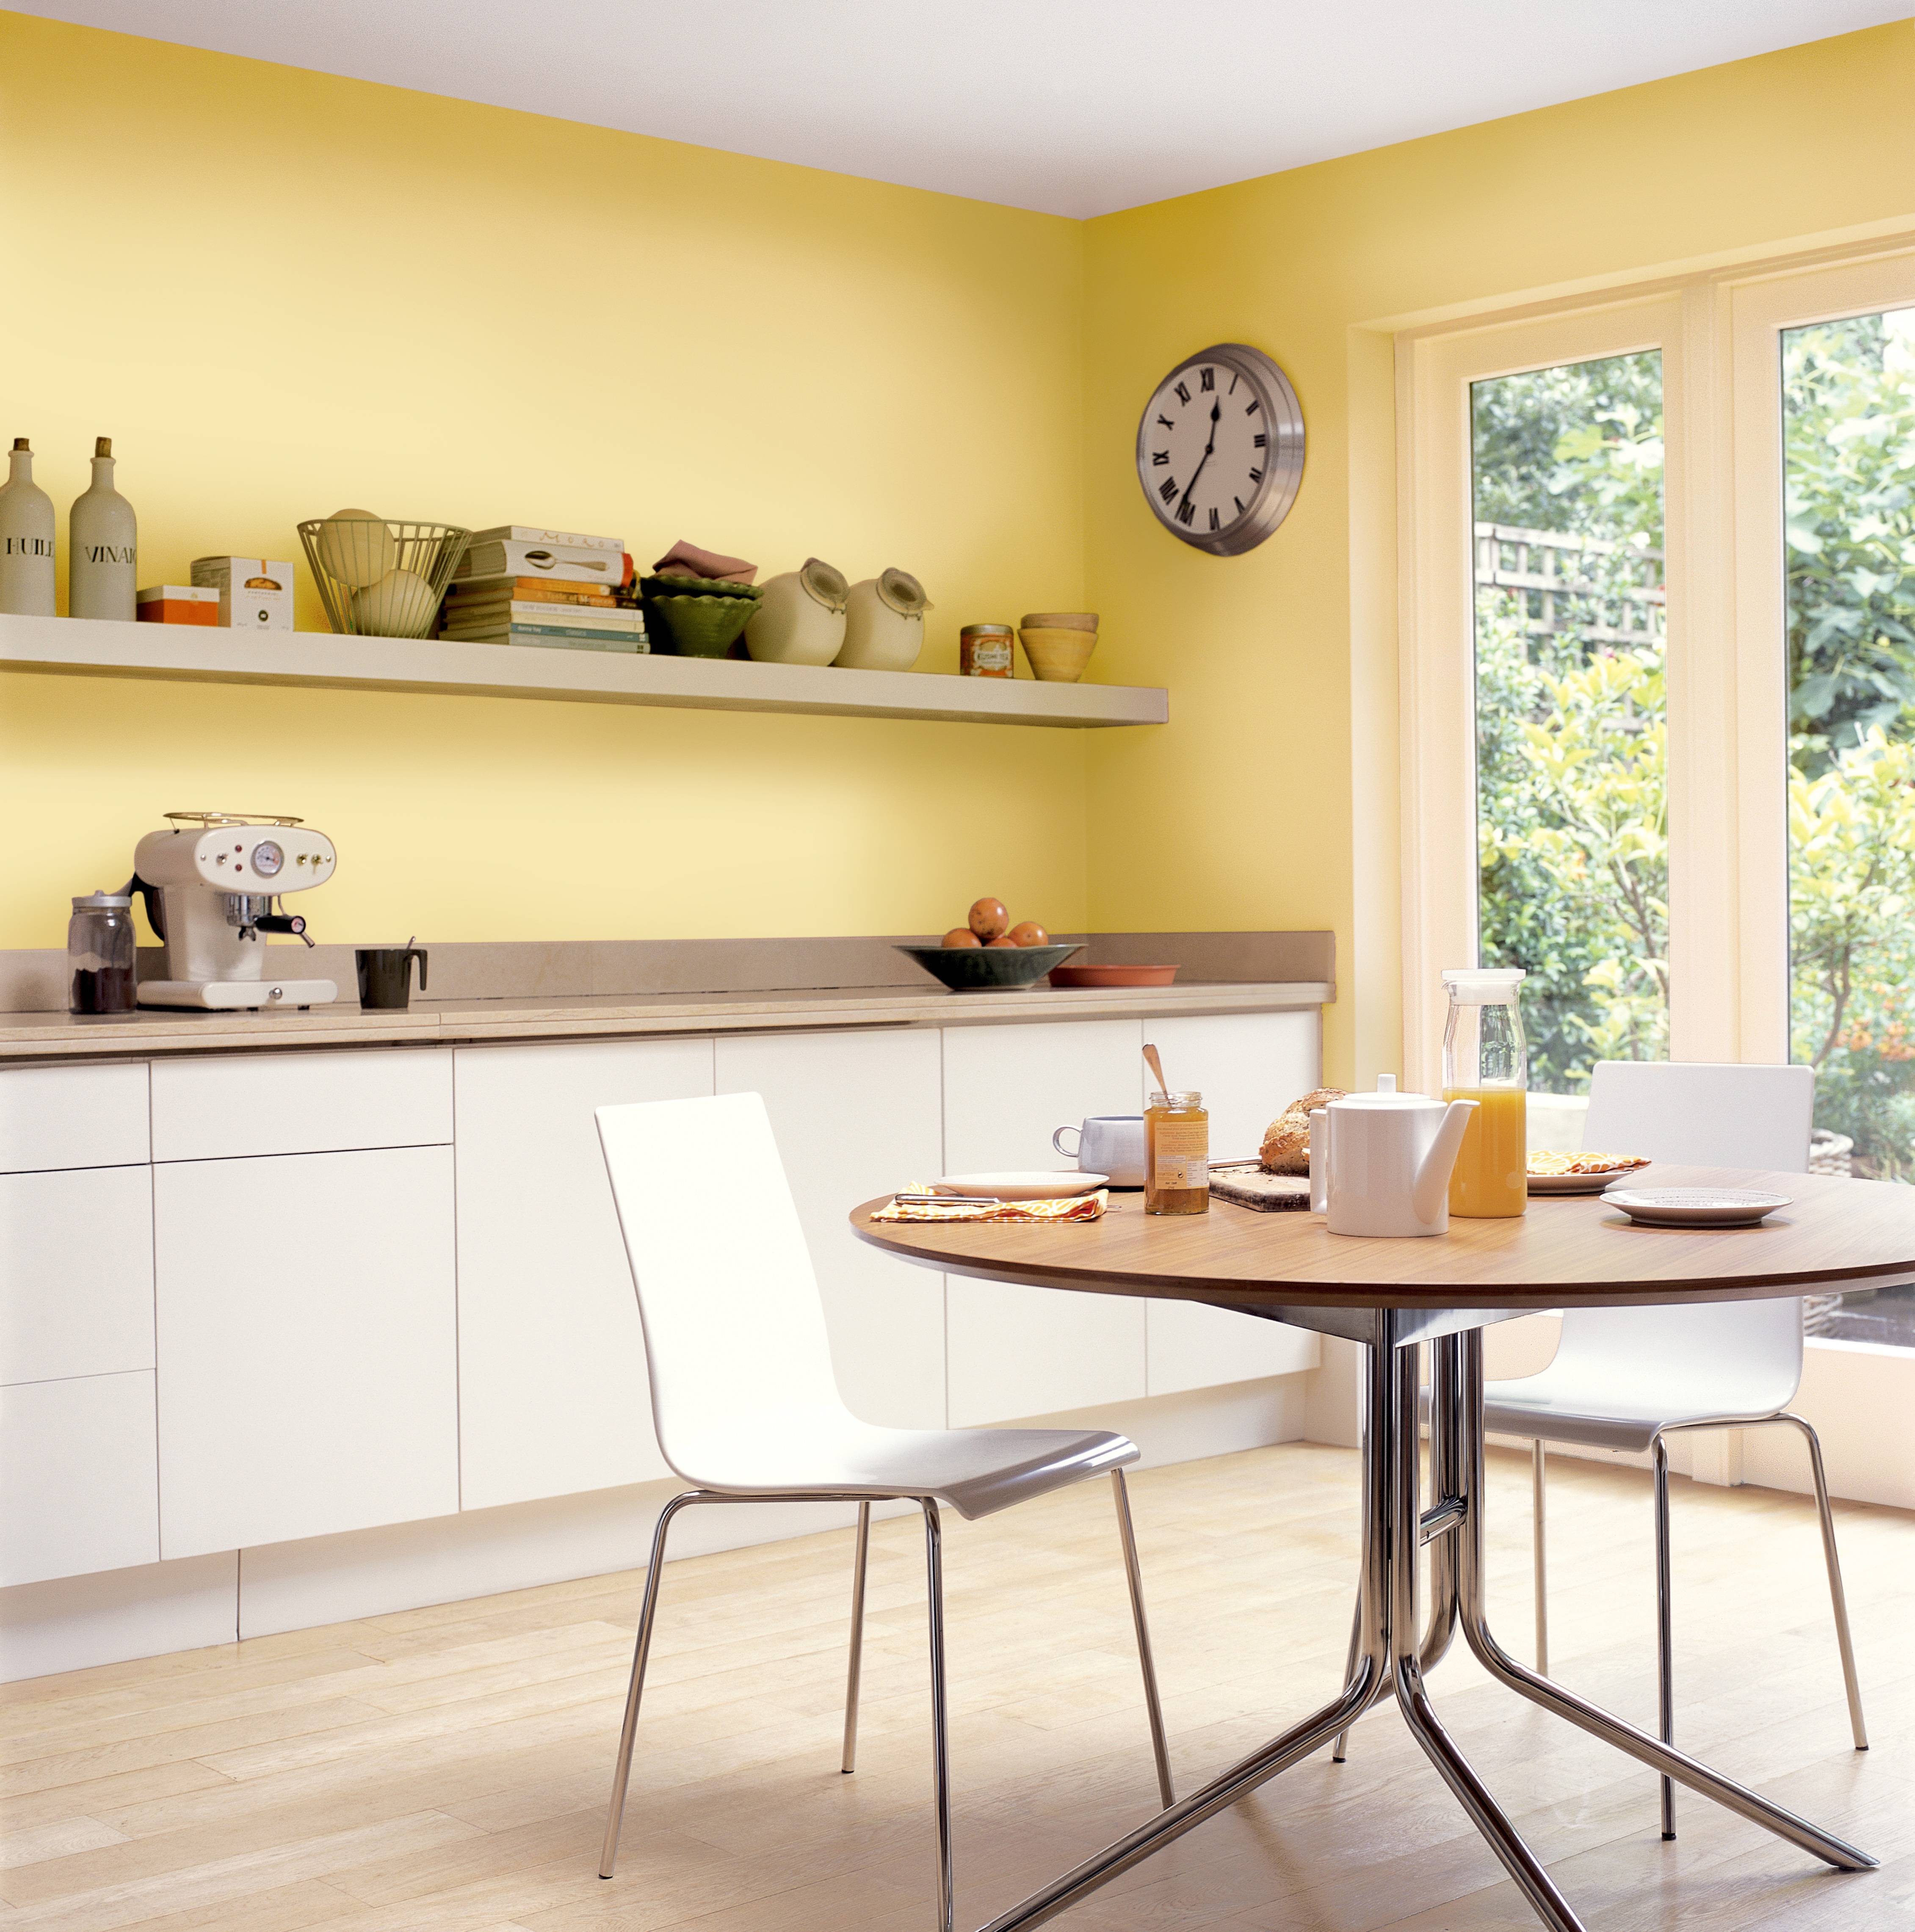 Покраска стен на кухне своими руками: дизайн, цвета, фото